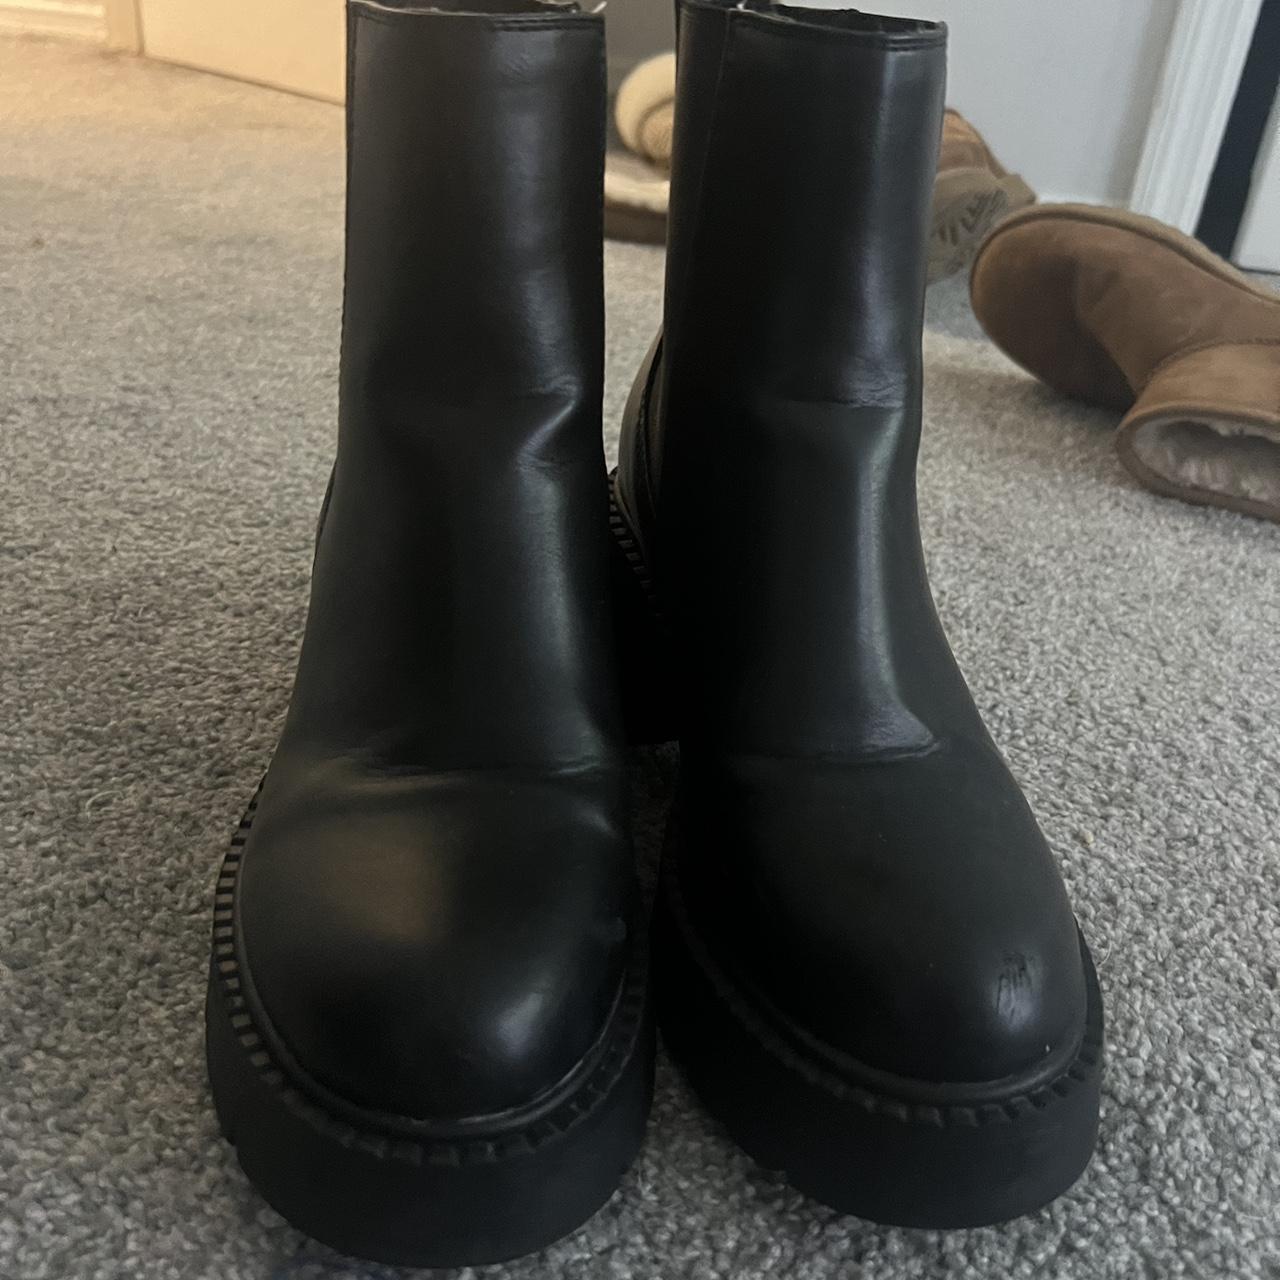 Size 9.5 madden girl boots - Depop